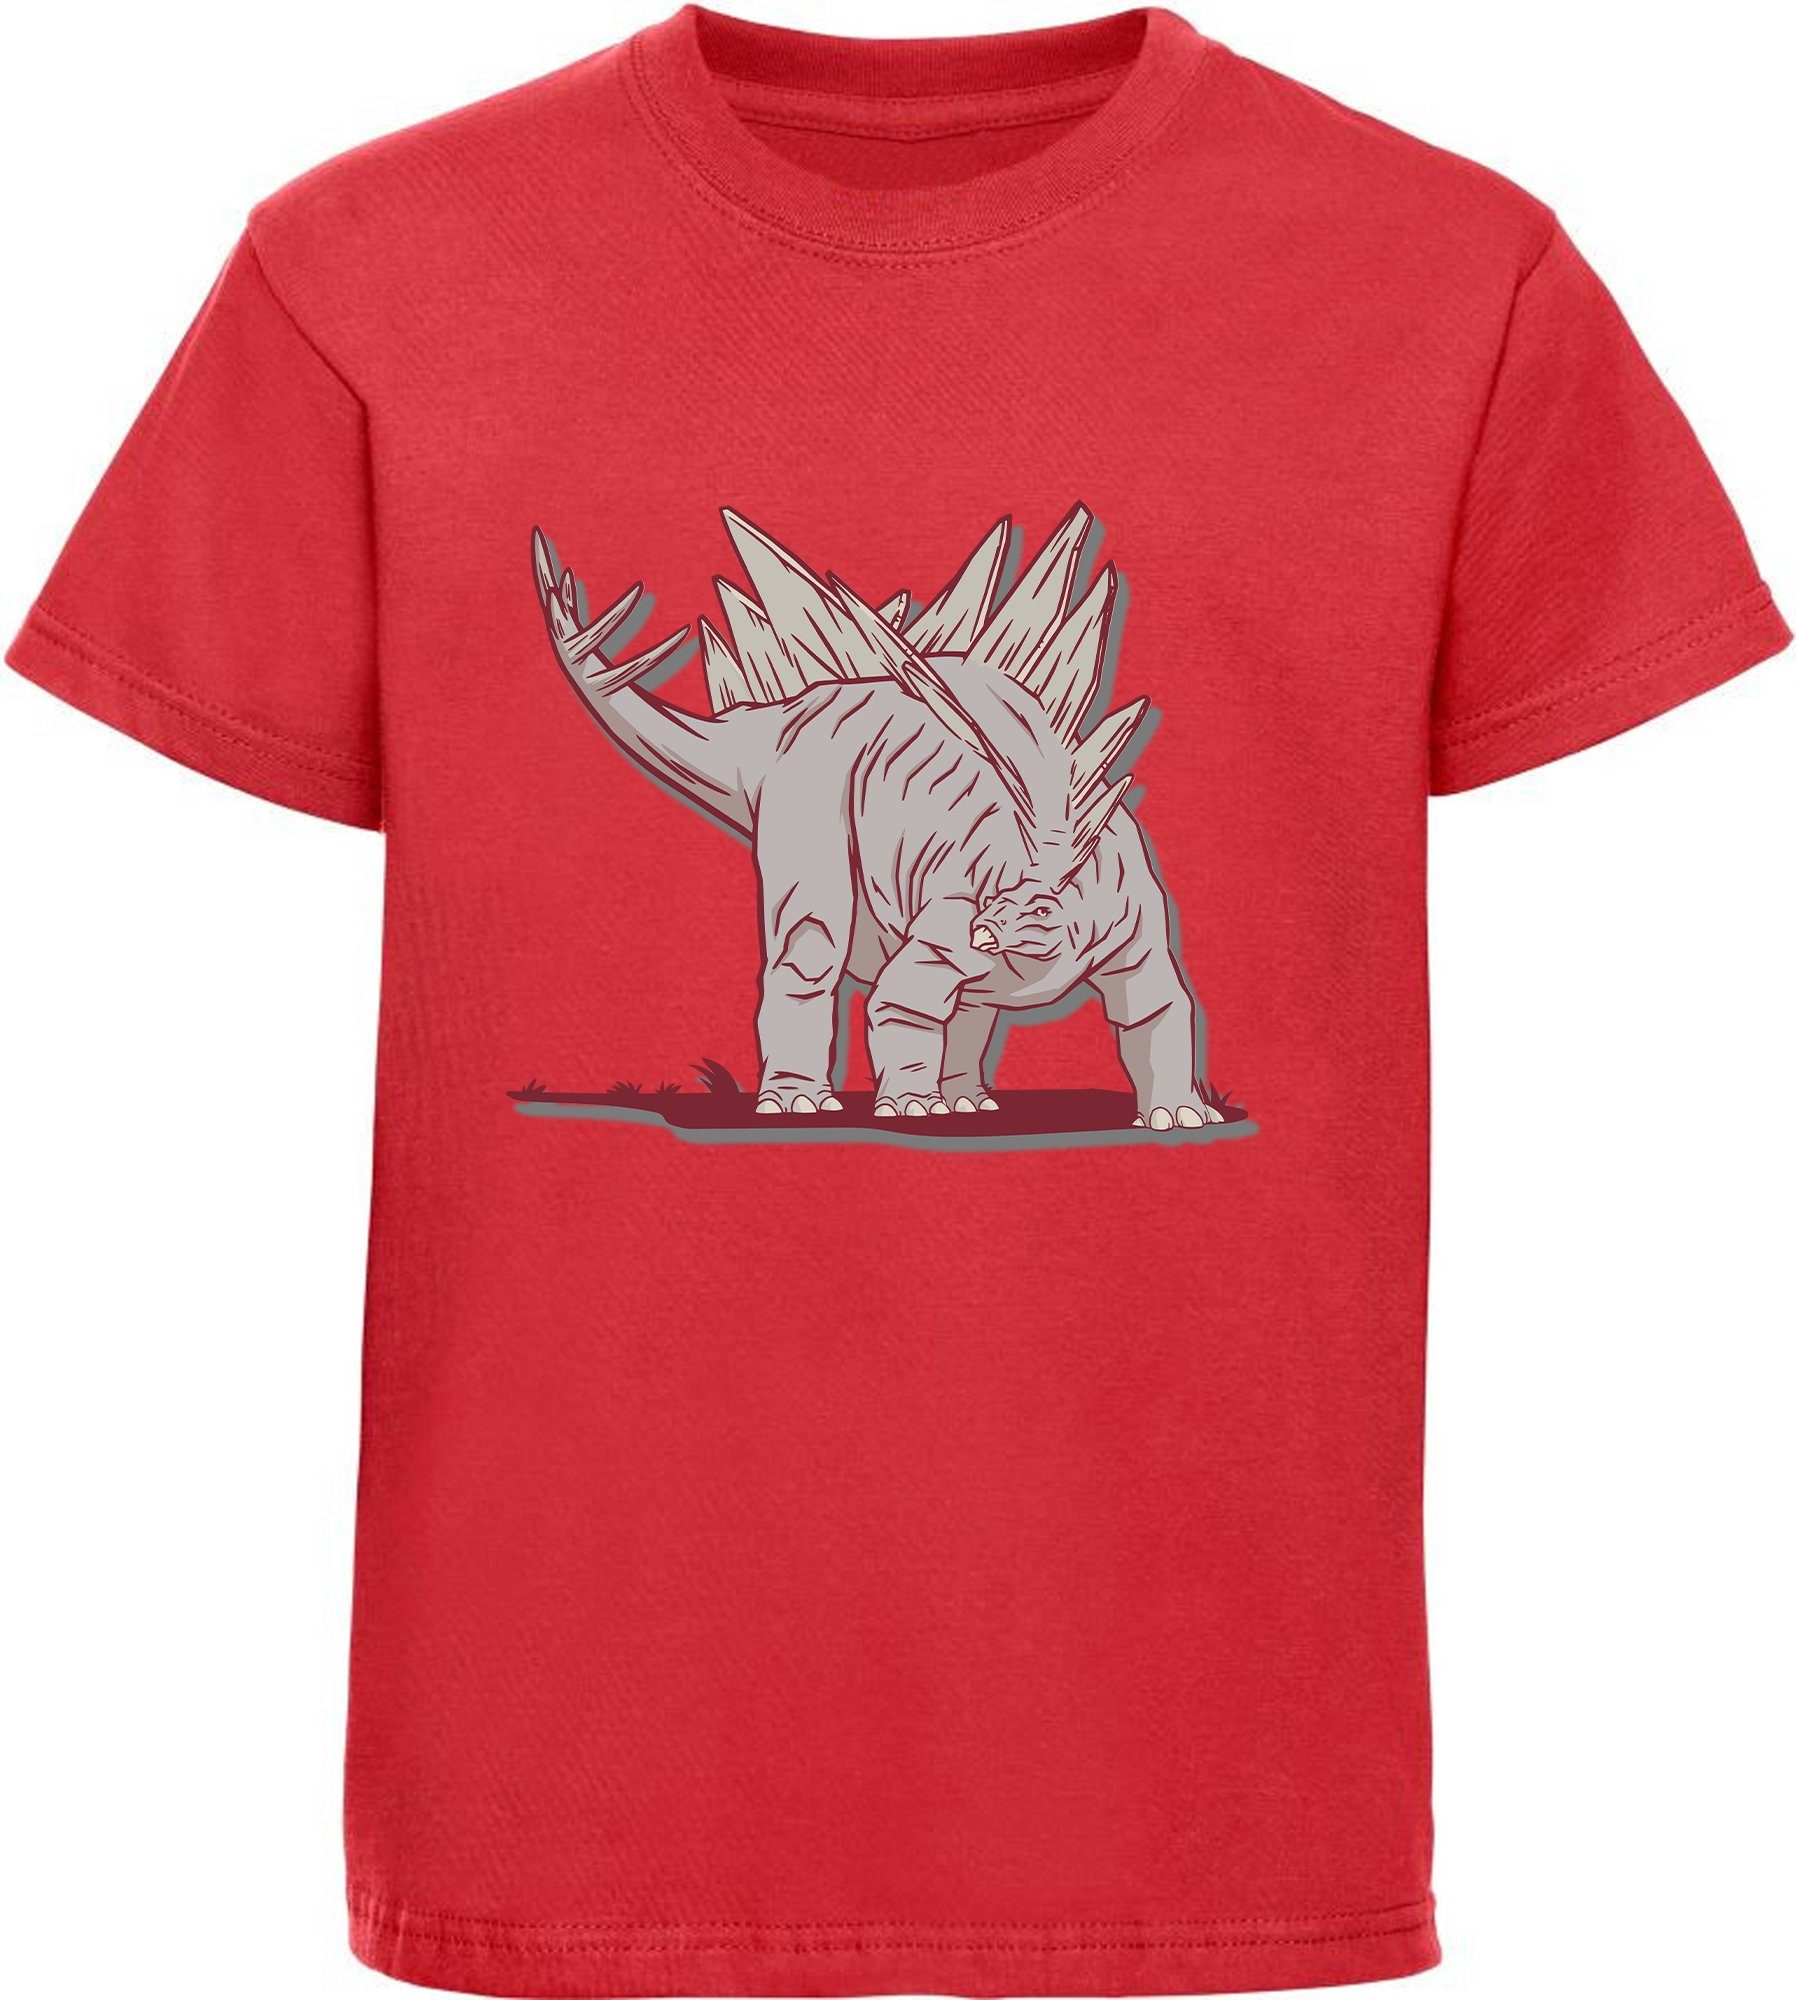 MyDesign24 Print-Shirt weiß, blau, Kinder T-Shirt Baumwollshirt rot, bedrucktes Stegosaurus i88 schwarz, mit mit Dino